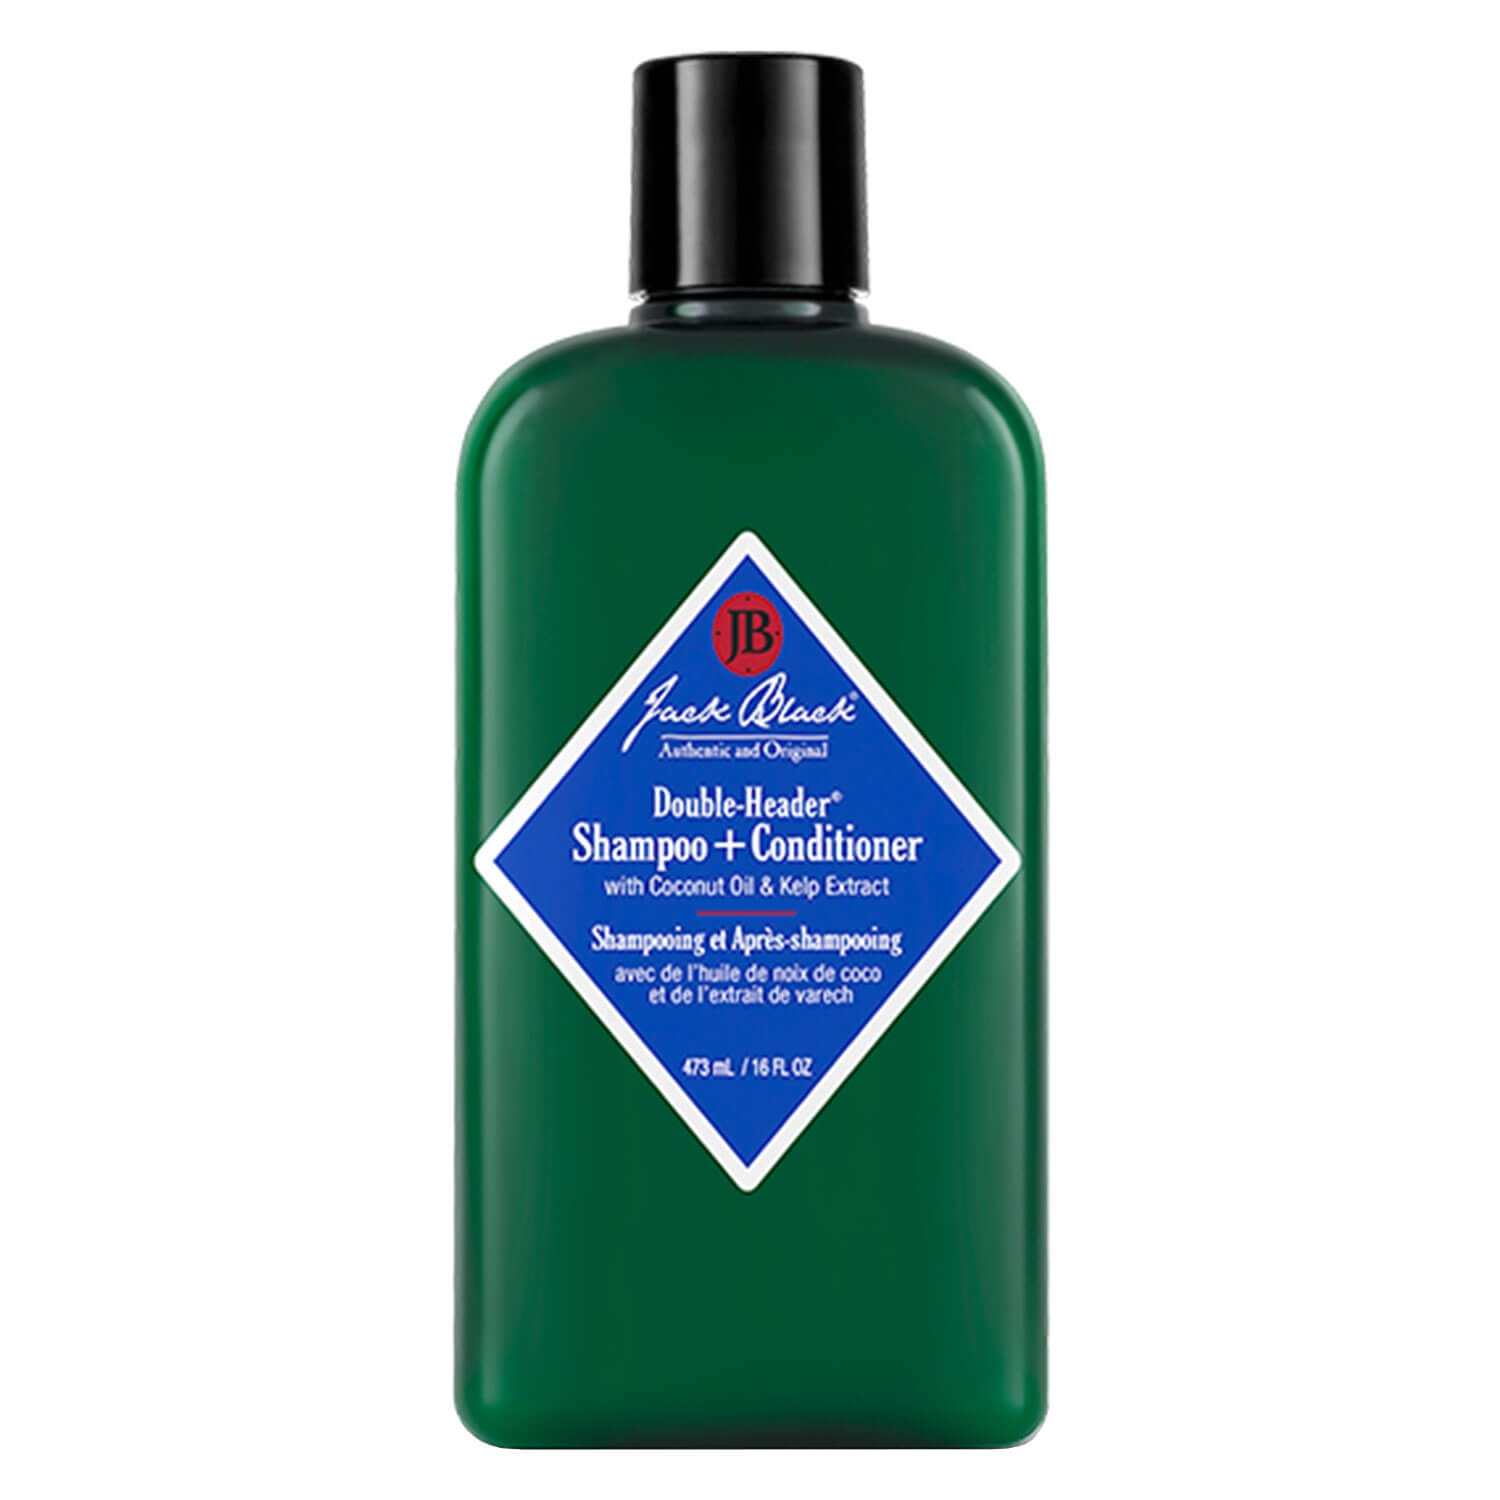 Produktbild von Jack Black - Double-Header Shampoo + Conditioner